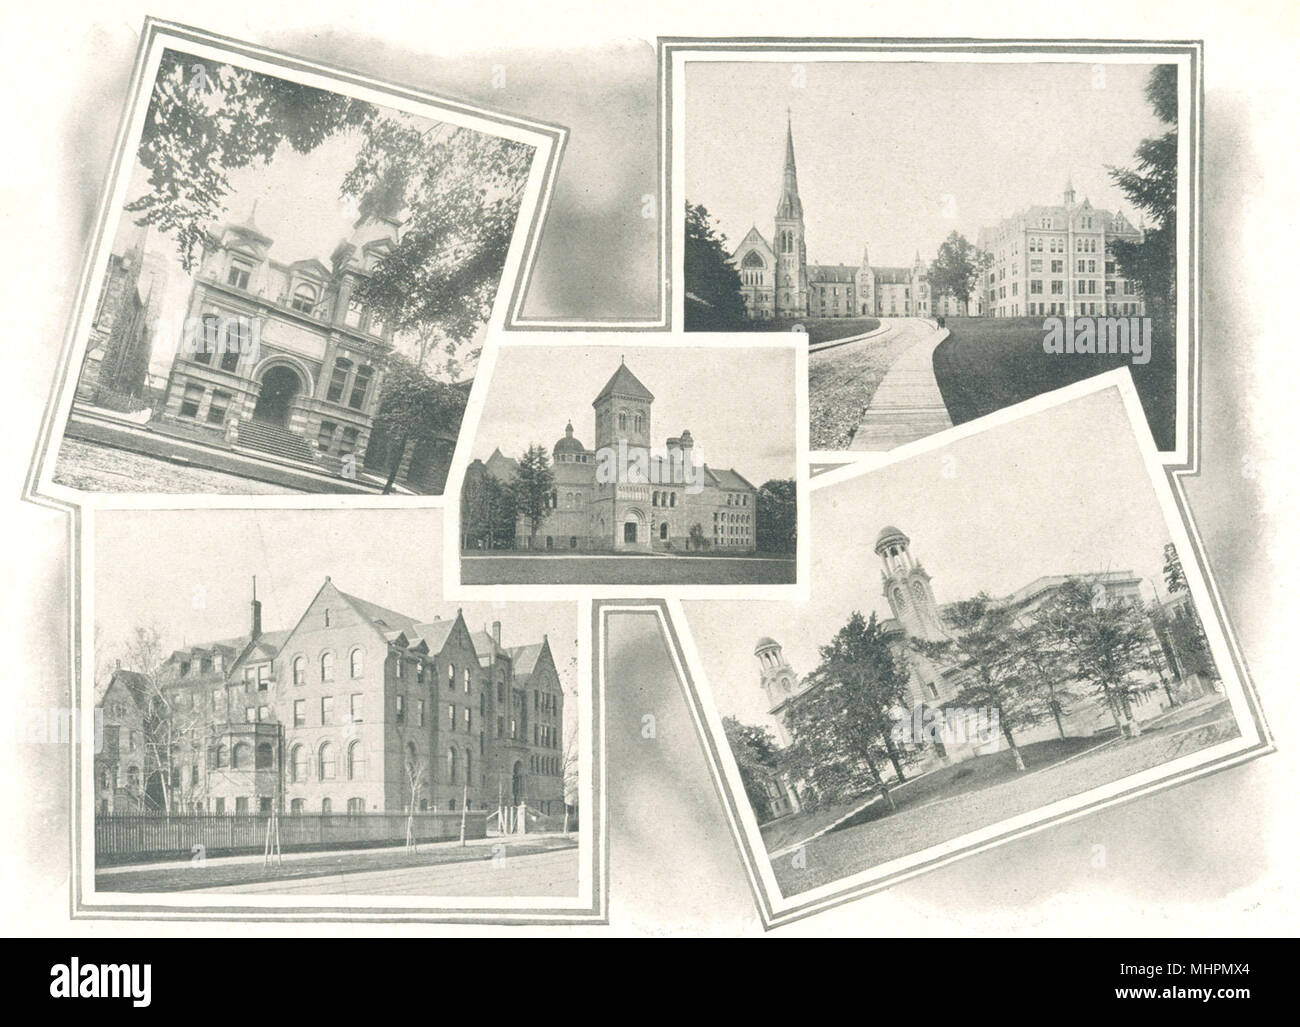 Collegi di Toronto. Farmacia. La parrocchia di San Michele. Uni Libreria. Wycliffe. Medical. 1900 Foto Stock